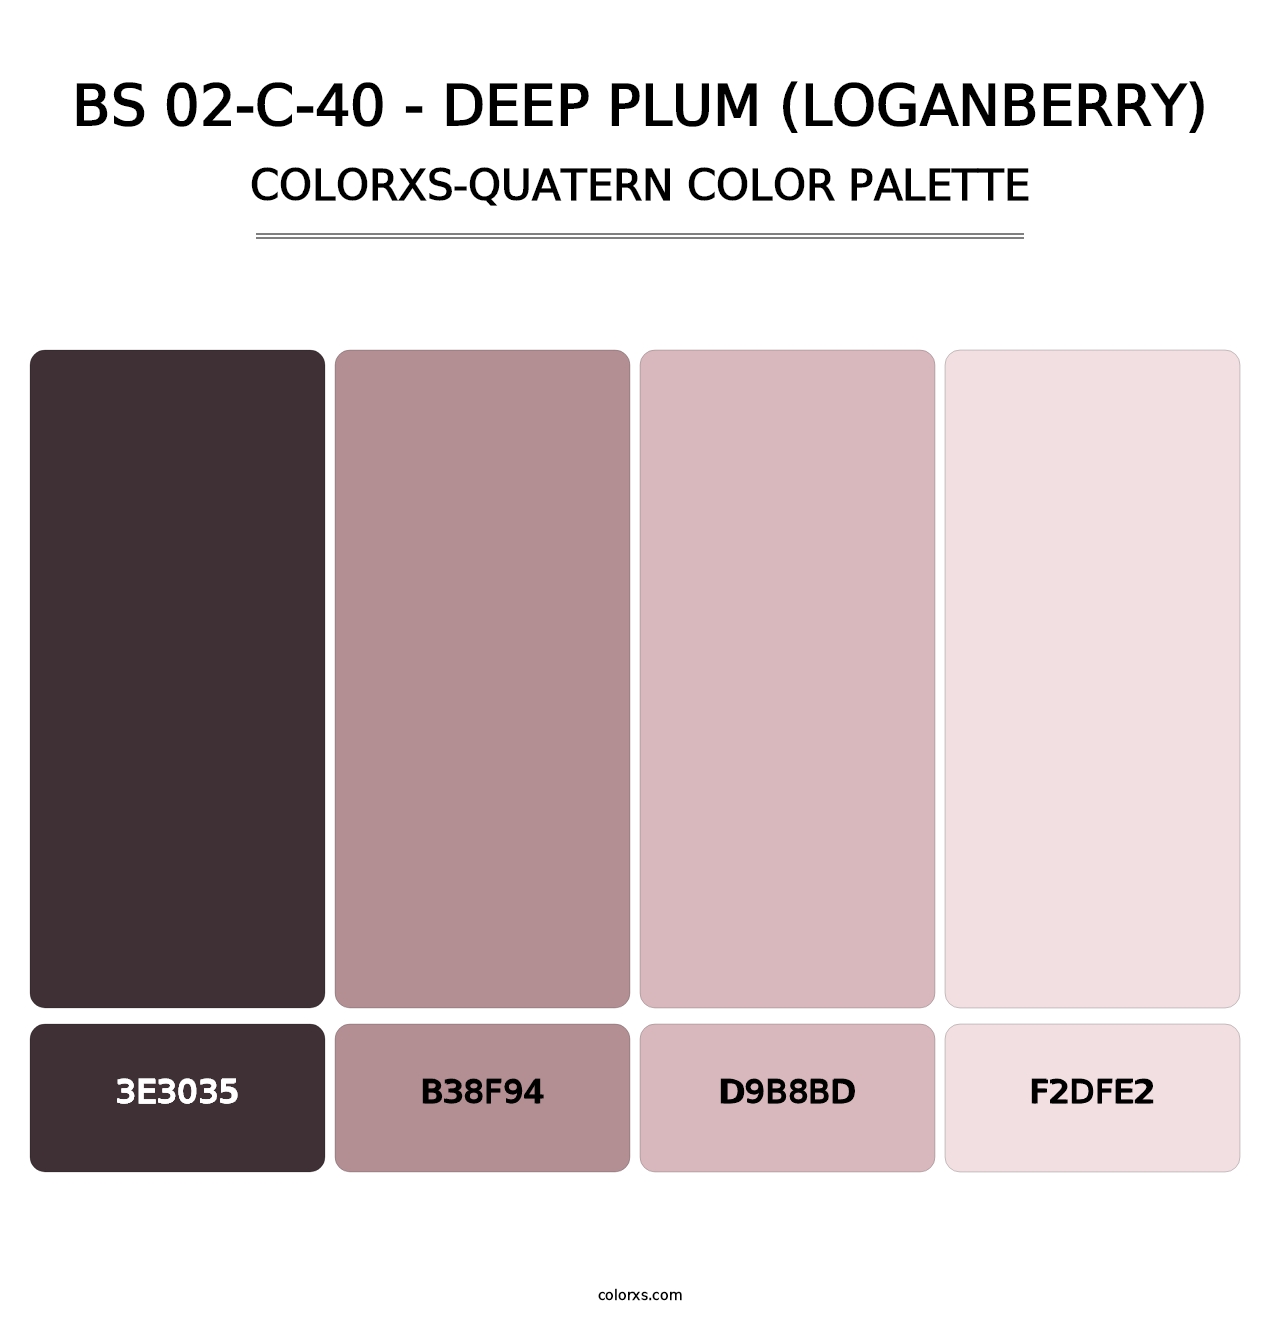 BS 02-C-40 - Deep Plum (Loganberry) - Colorxs Quatern Palette